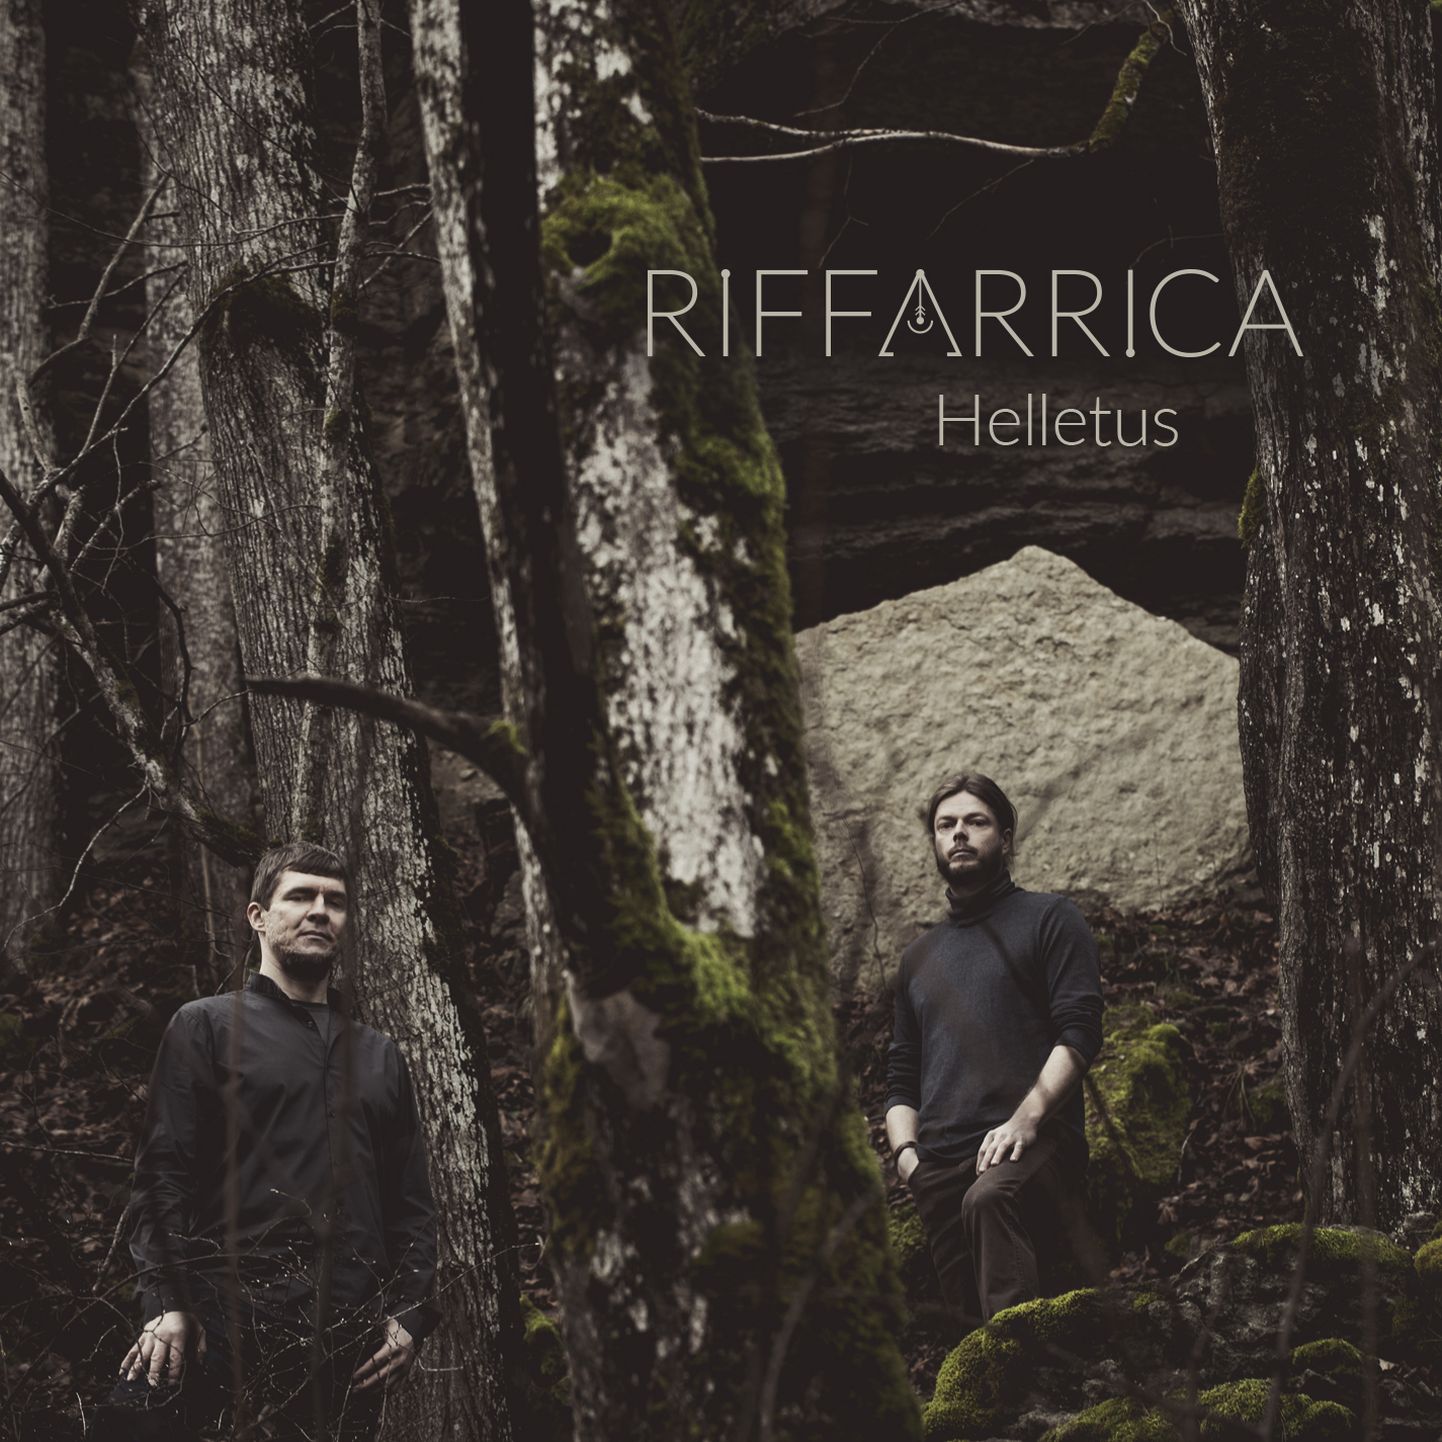 Riffarrica uus singel "Helletus".